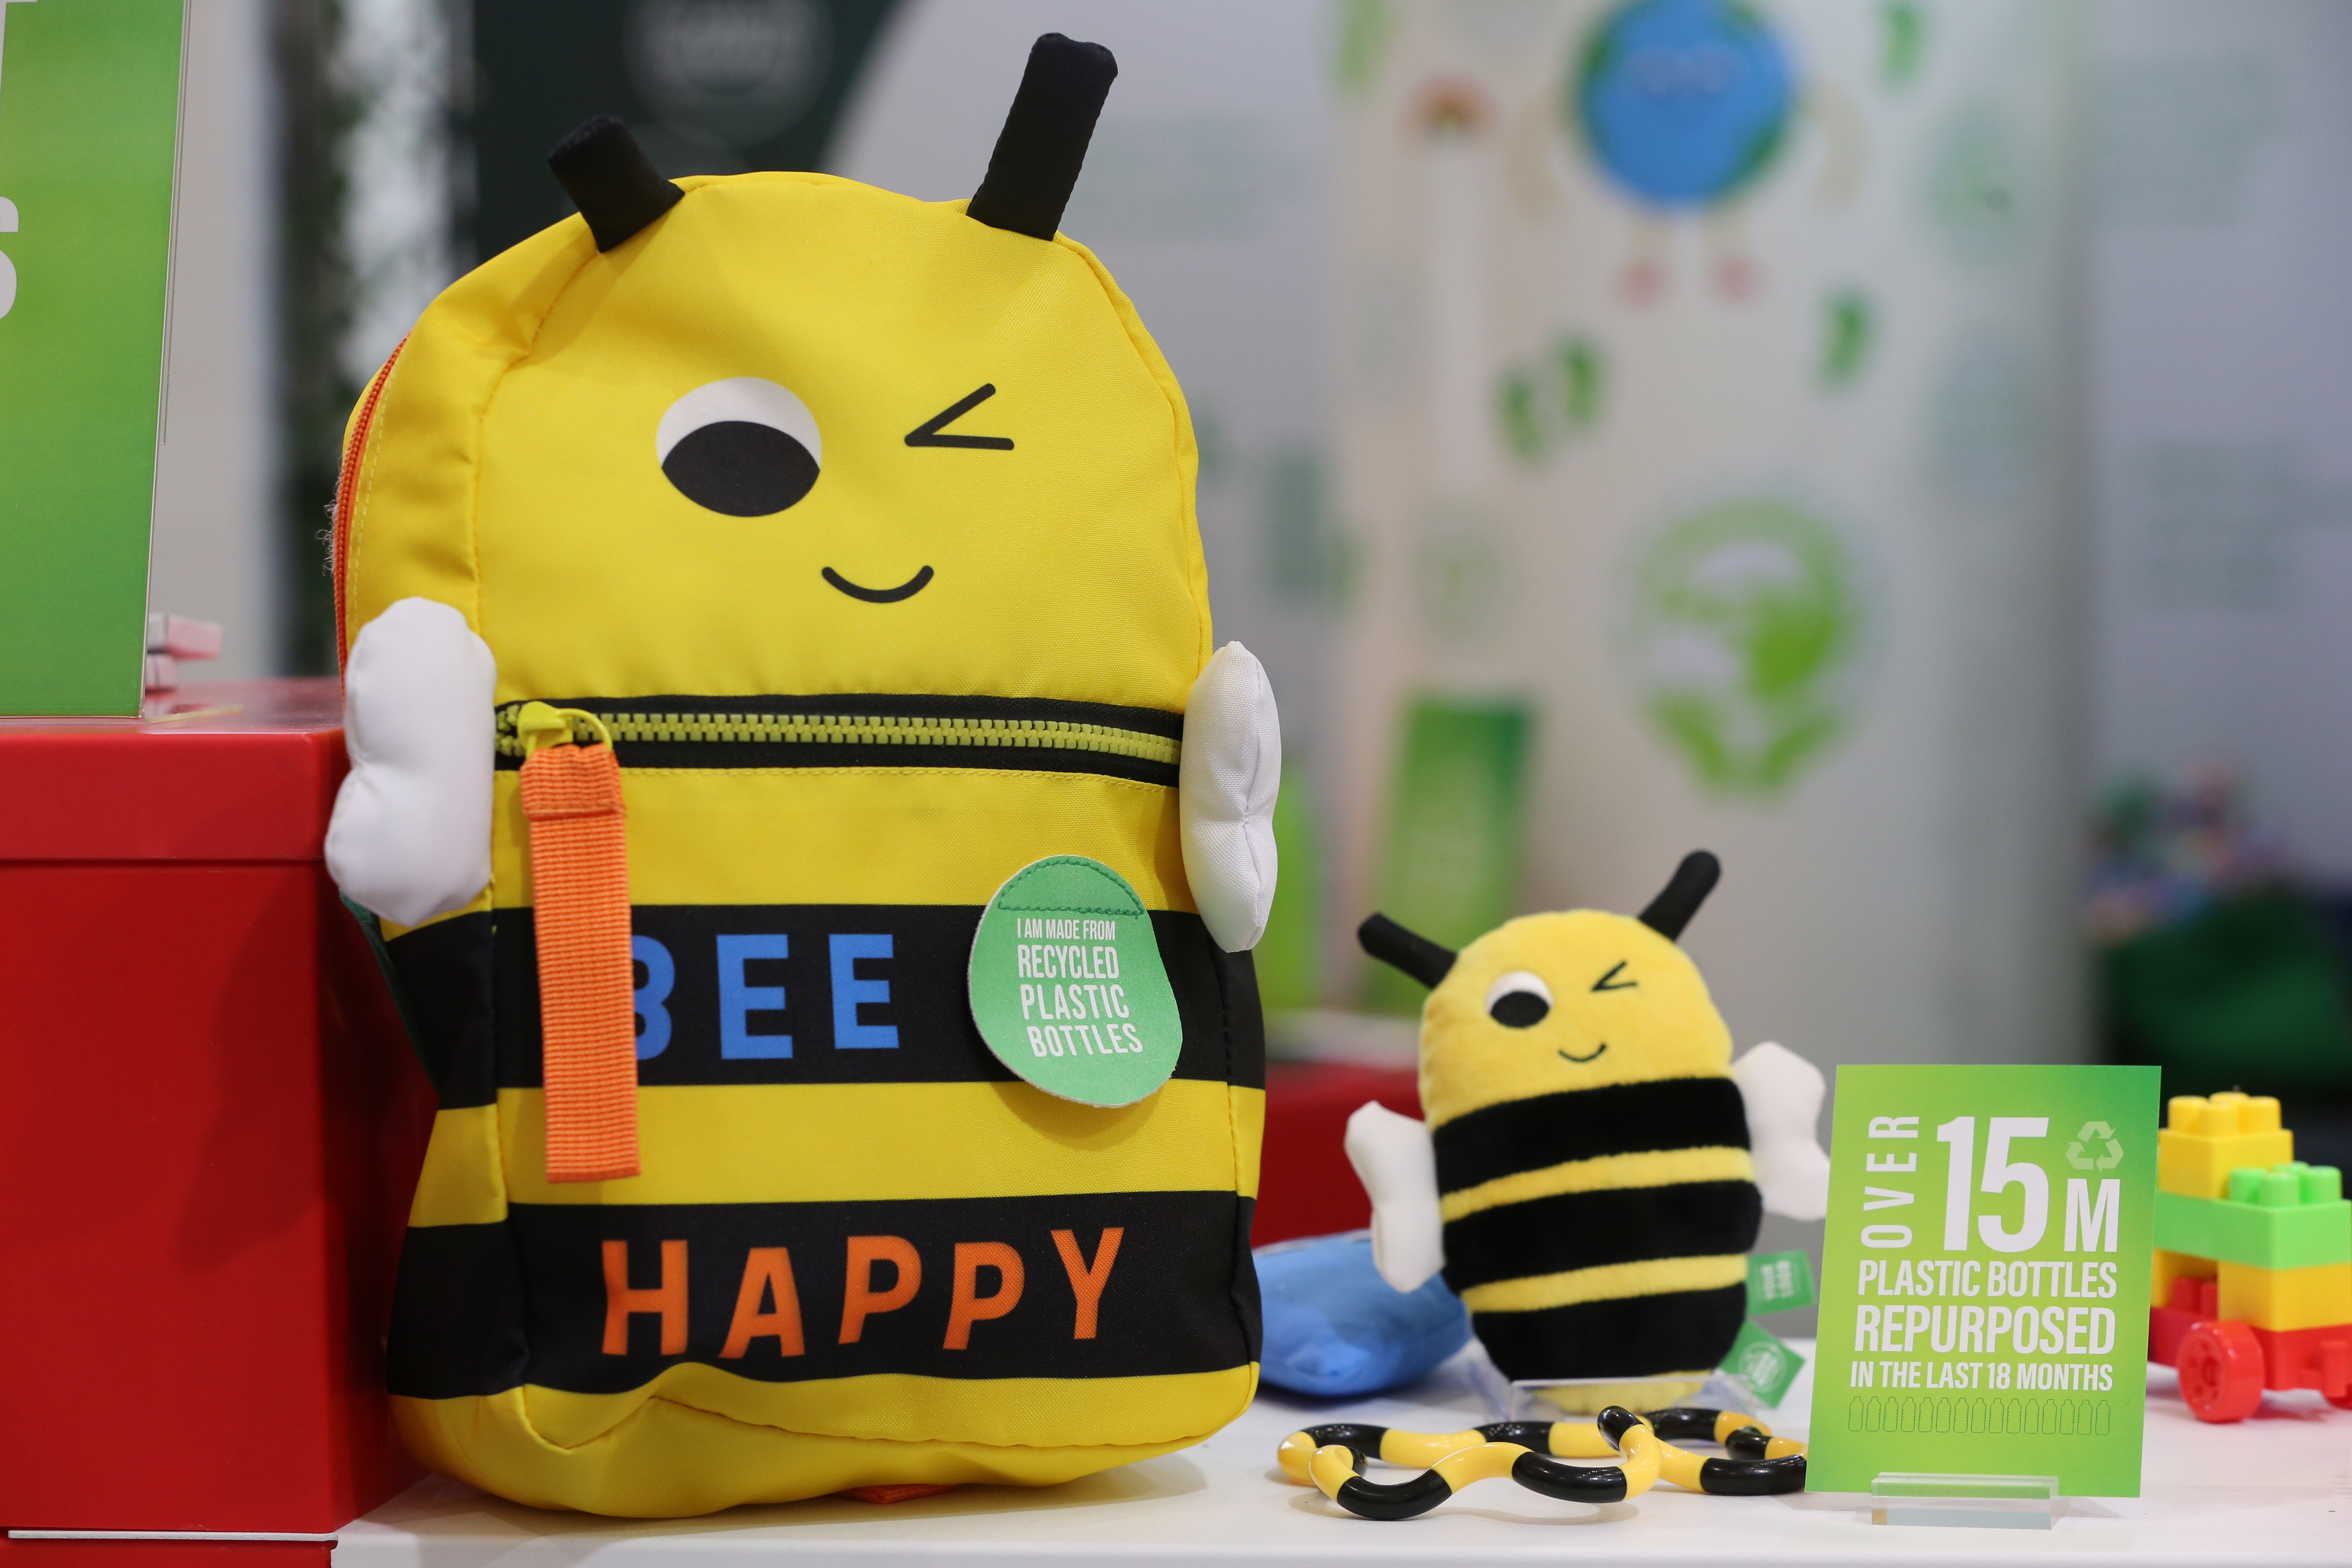 children's plush bee toy "bee happy" text